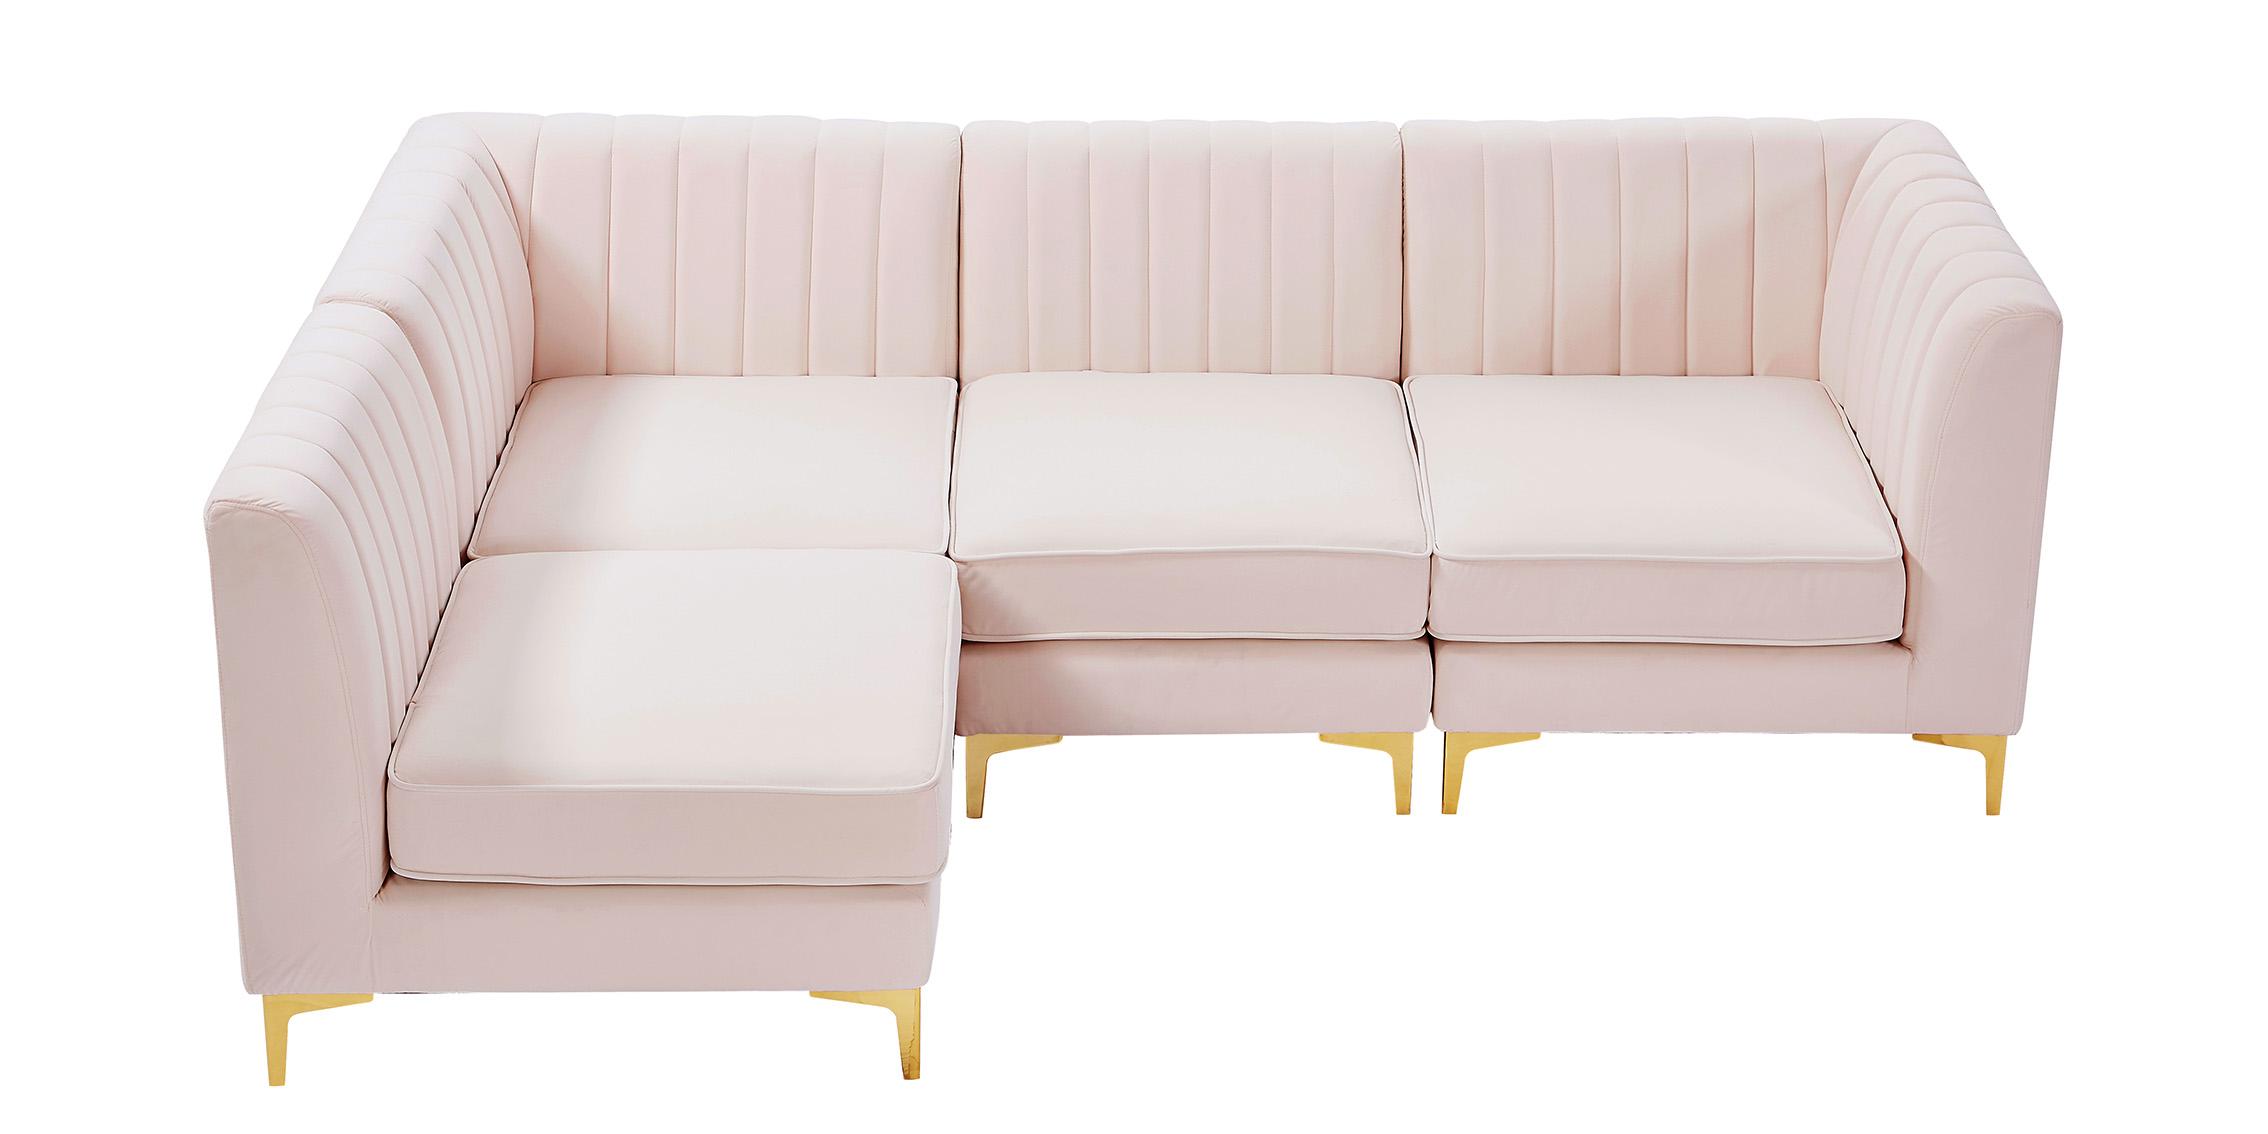 

    
604Pink-Sec4A Meridian Furniture Modular Sectional Sofa
